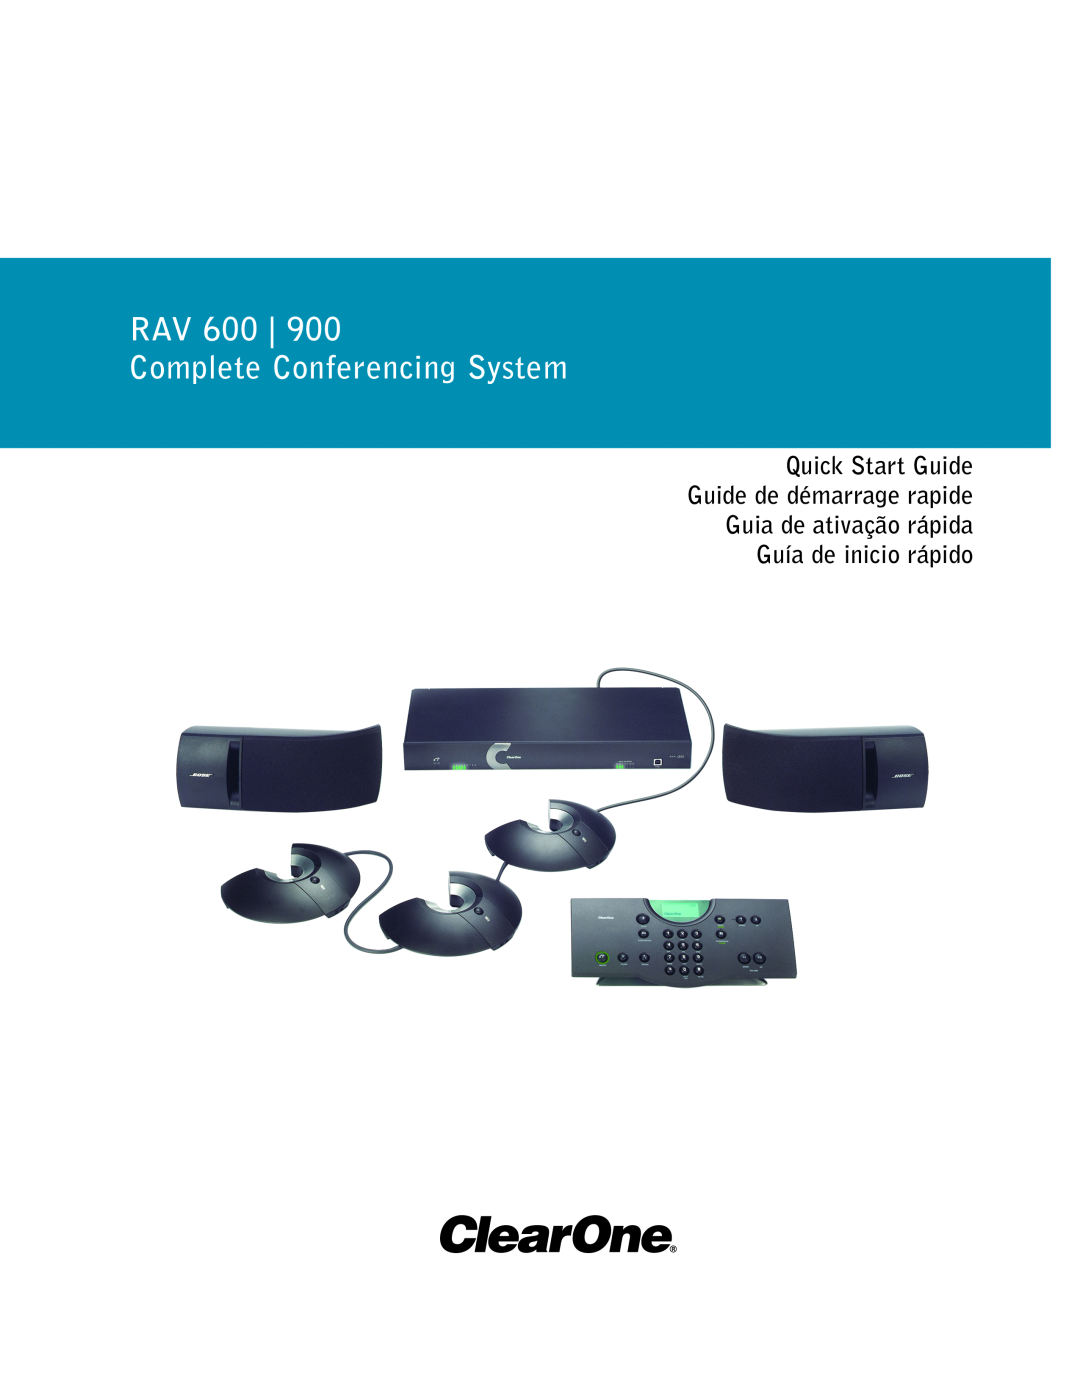 ClearOne comm RAV 600/900 quick start RAV 600 Complete Conferencing System, Guía de inicio rápido 